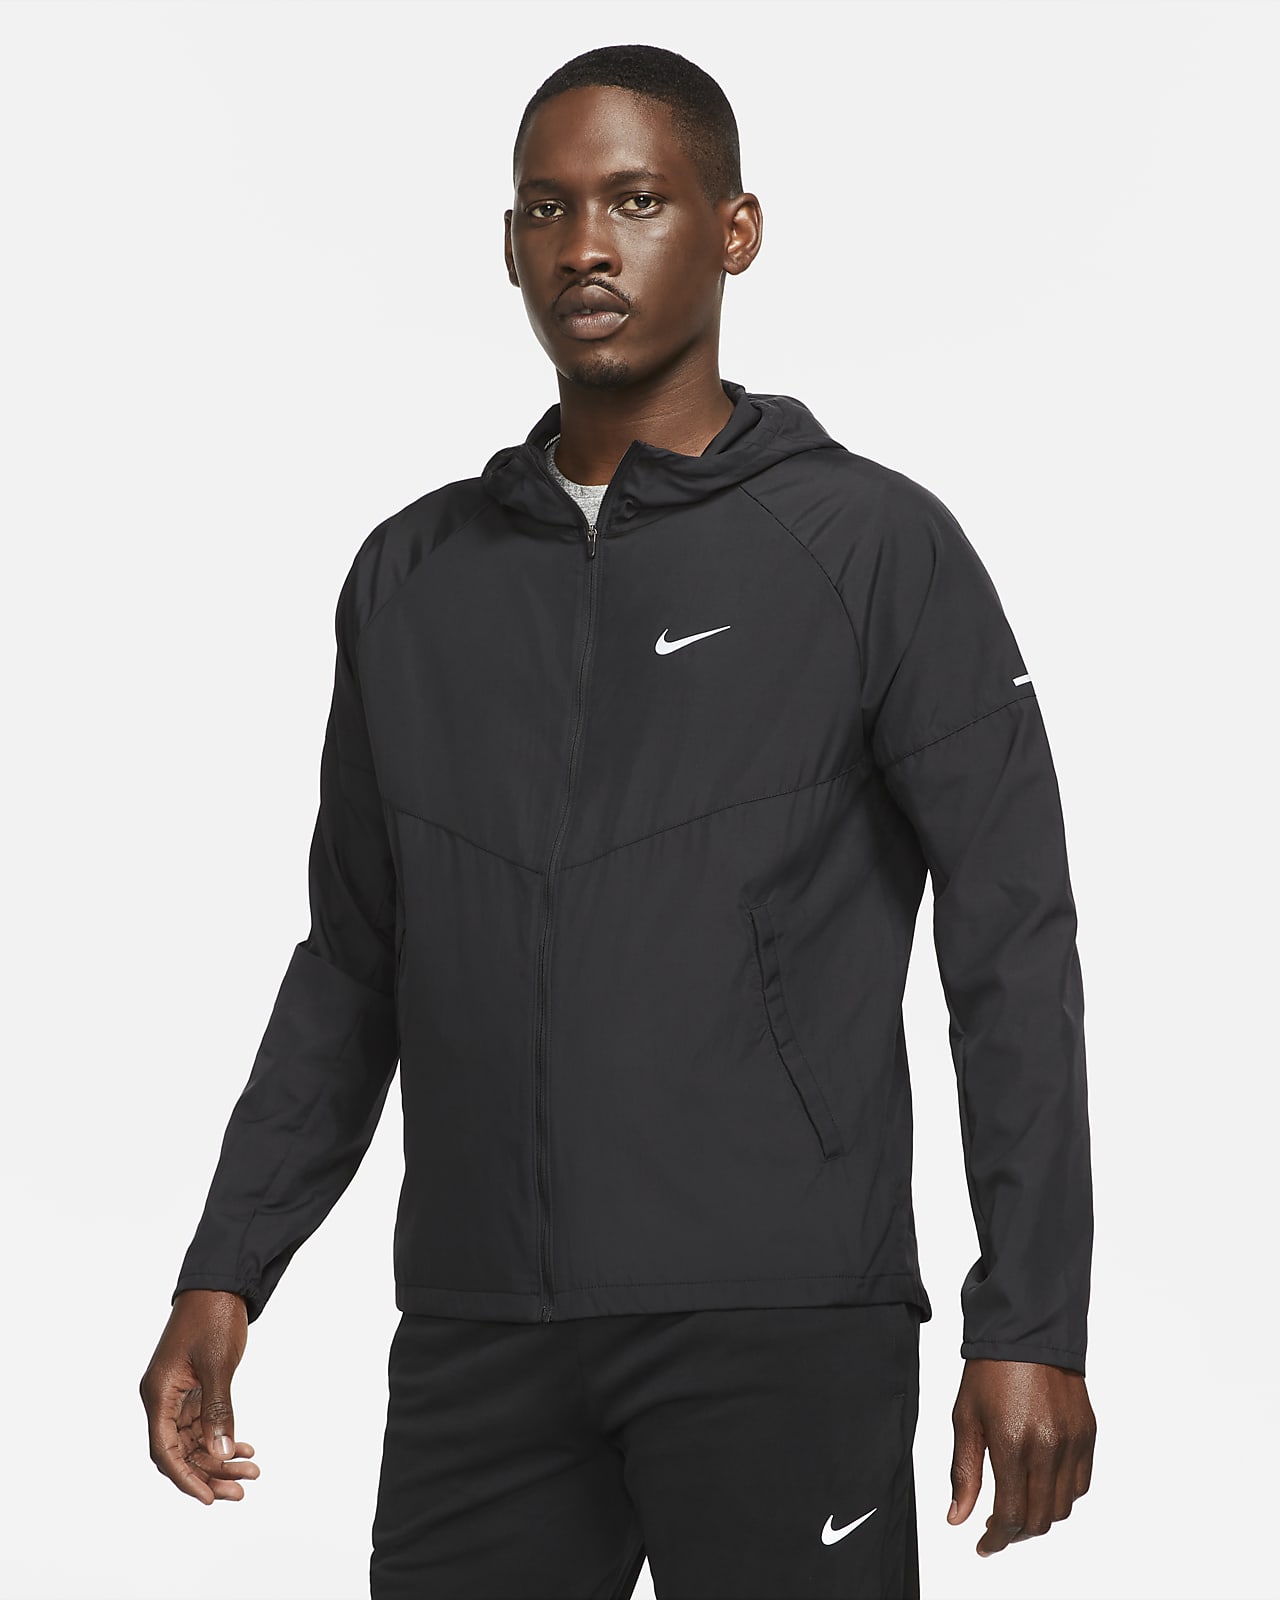 Nike Repel Miler Chaqueta de running - Hombre